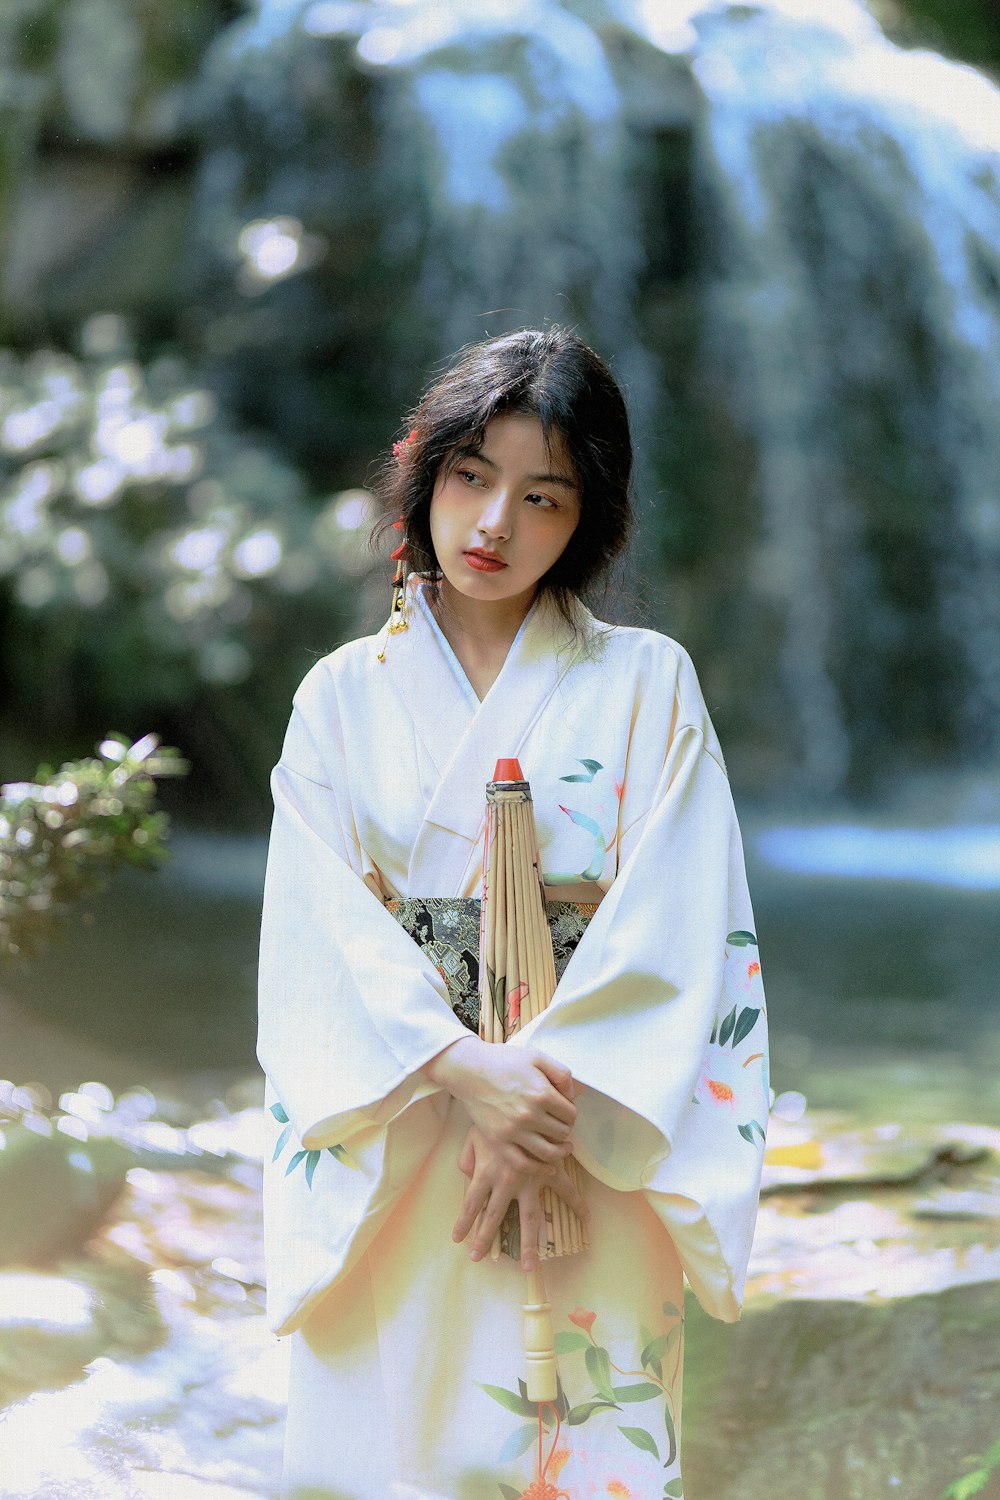 Femme en kimono blanc debout près de fleurs blanches pendant la journée